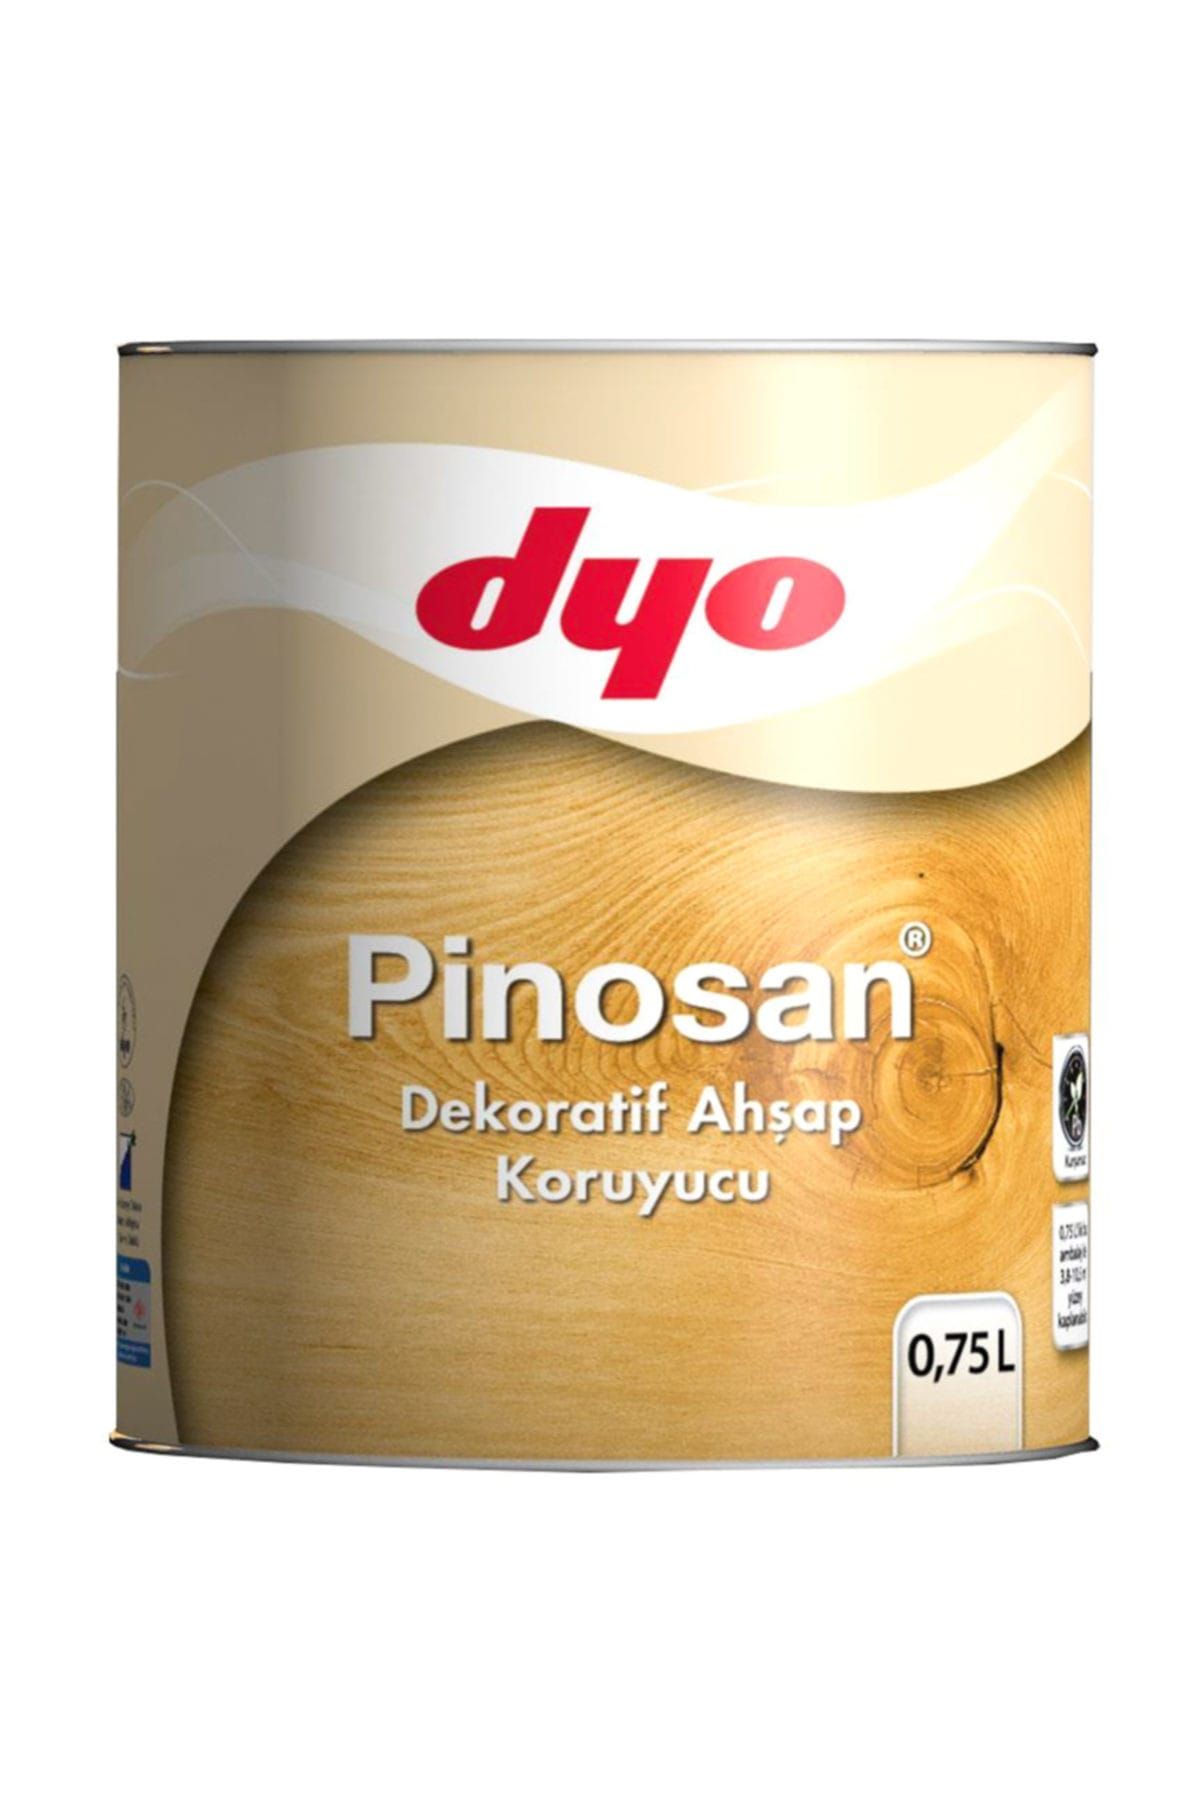 Dyo Pinosan Dekoratif Ahşap Kor. 0,75 Lt Klasik Ceviz